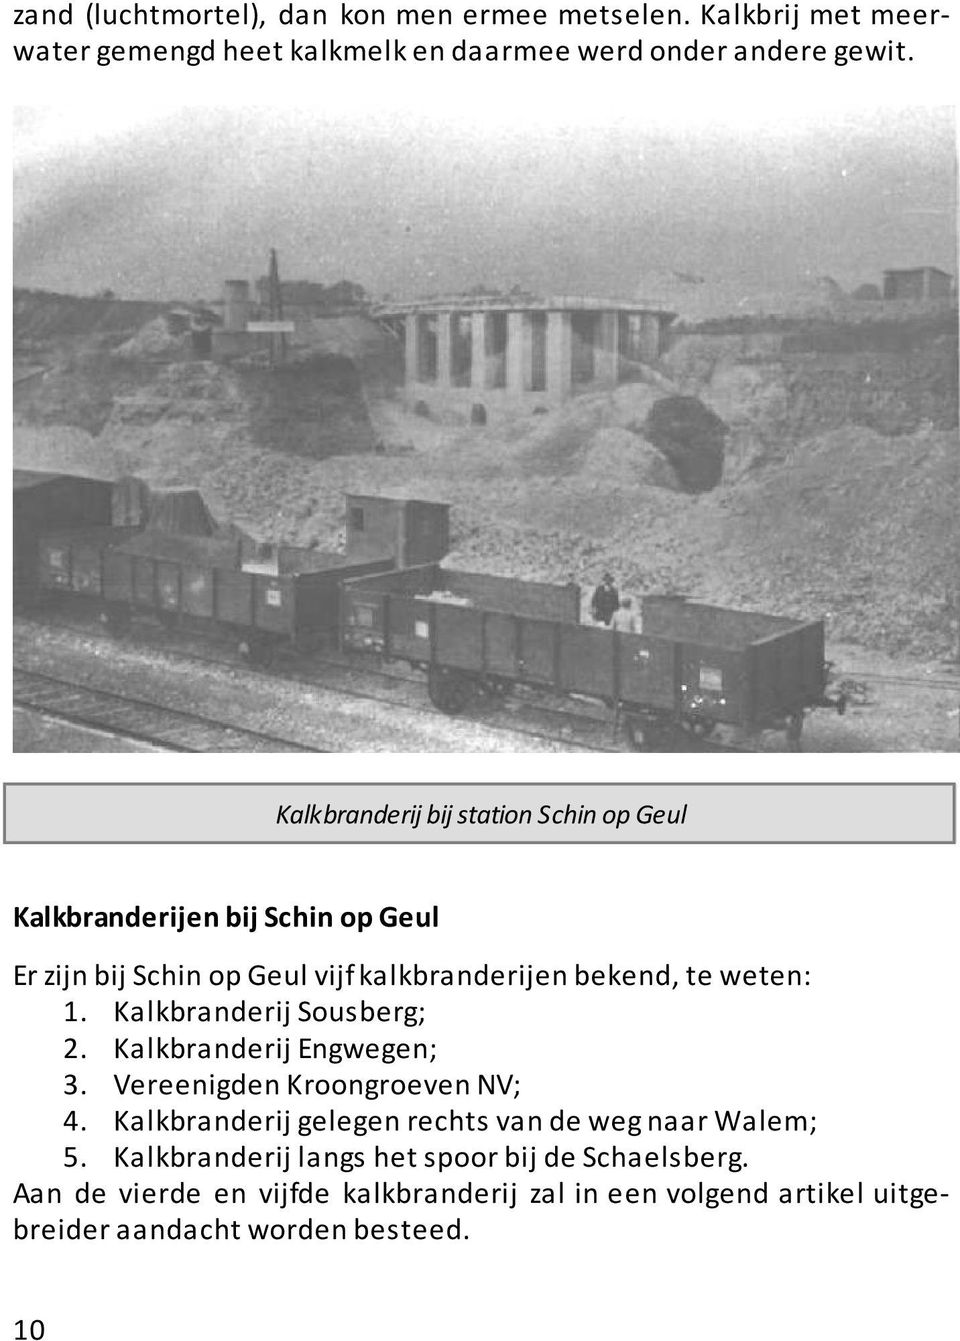 Kalkbranderij Sousberg; 2. Kalkbranderij Engwegen; 3. Vereenigden Kroongroeven NV; 4. Kalkbranderij gelegen rechts van de weg naar Walem; 5.